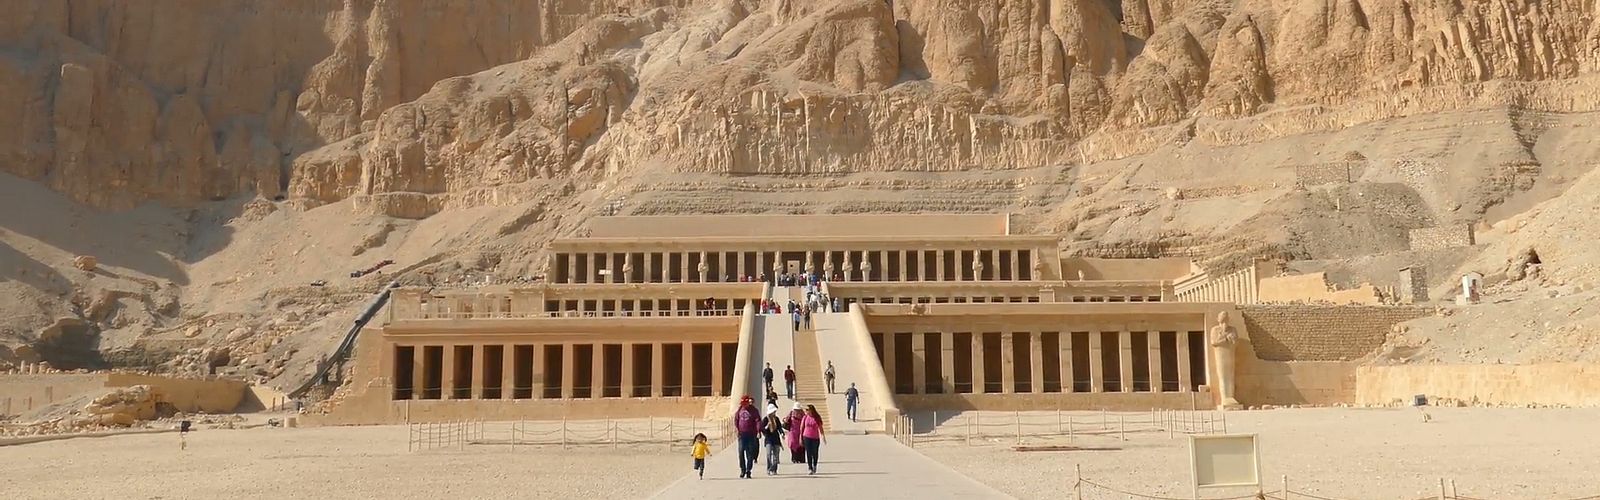 Die Top 10 Sehenswürdigkeiten & Besichtigungstouren in Sahl Hasheesh 2022